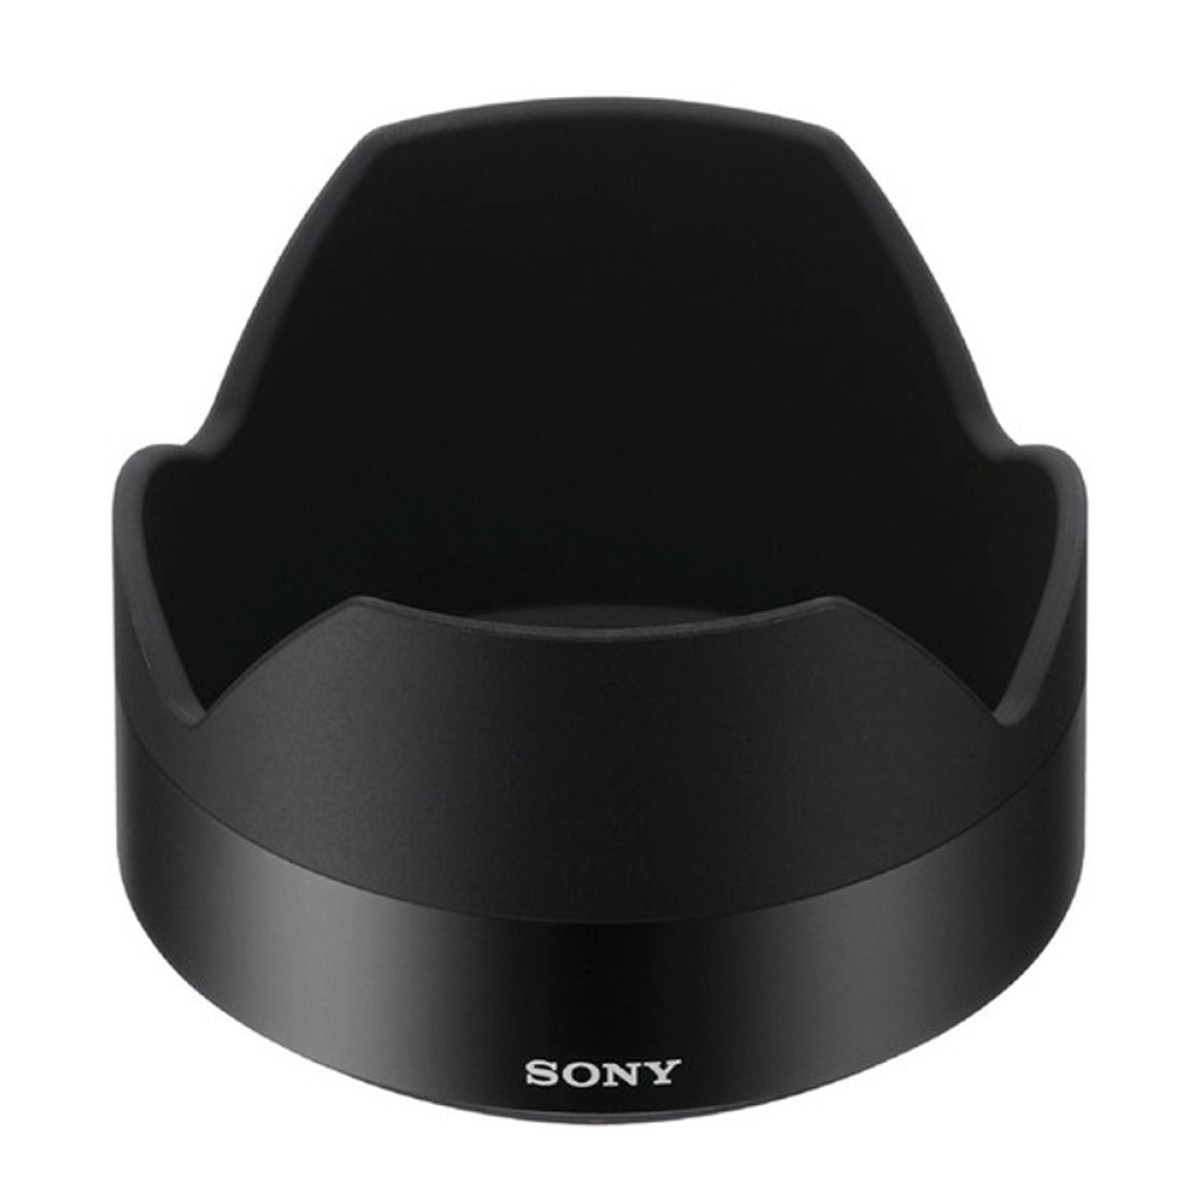 Sony ALC-SH137 Gegenlichtblende